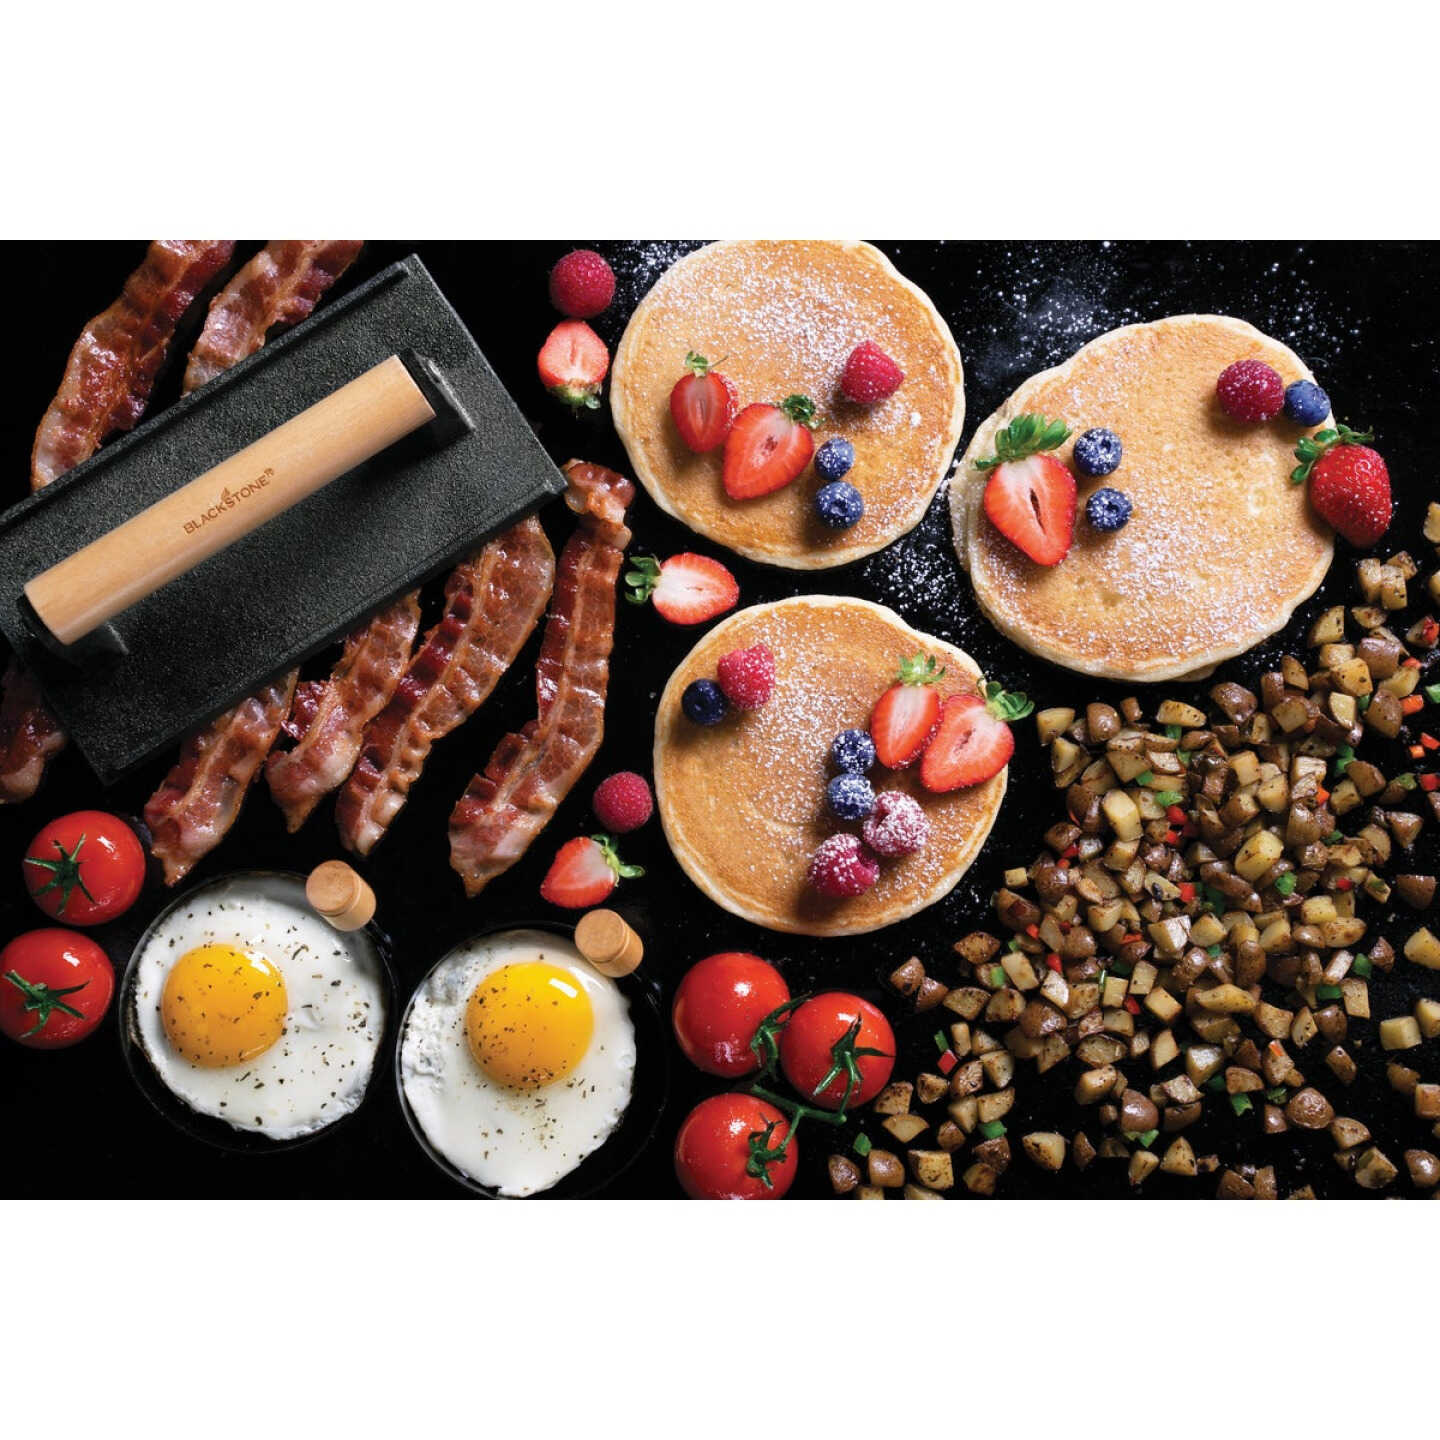  7 Piece Griddle Breakfast Kit for Blackstone, Griddle